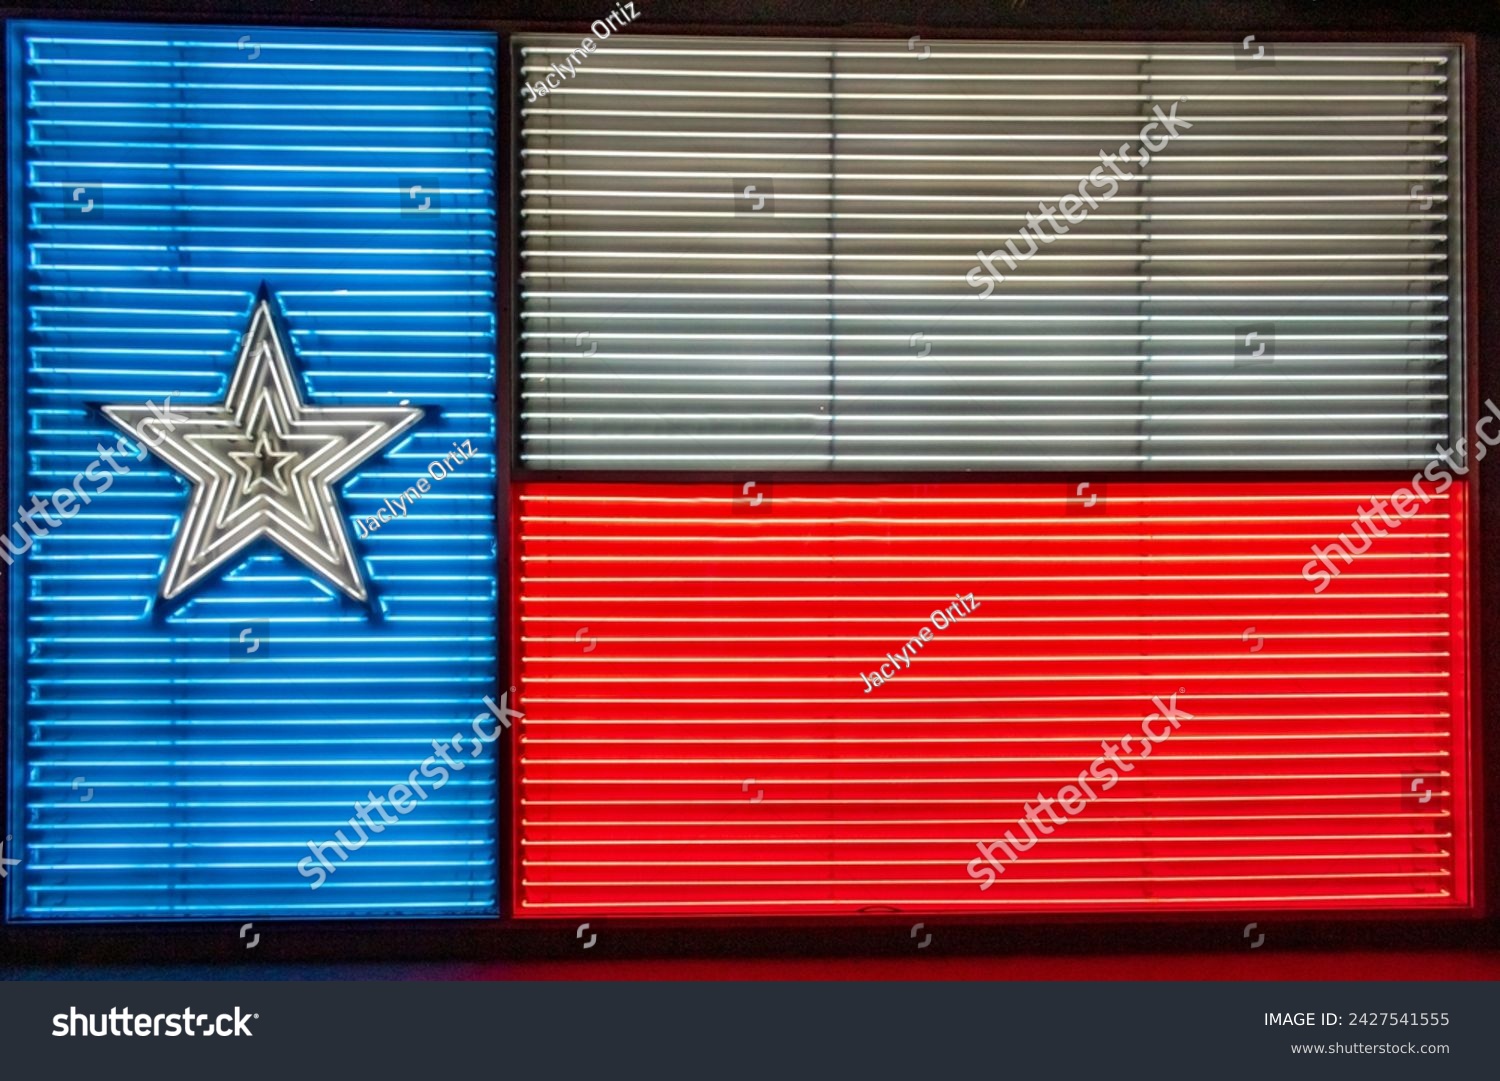 Texas Flag neon light design display at Texas institute of Culture in San Antonio Texas #2427541555